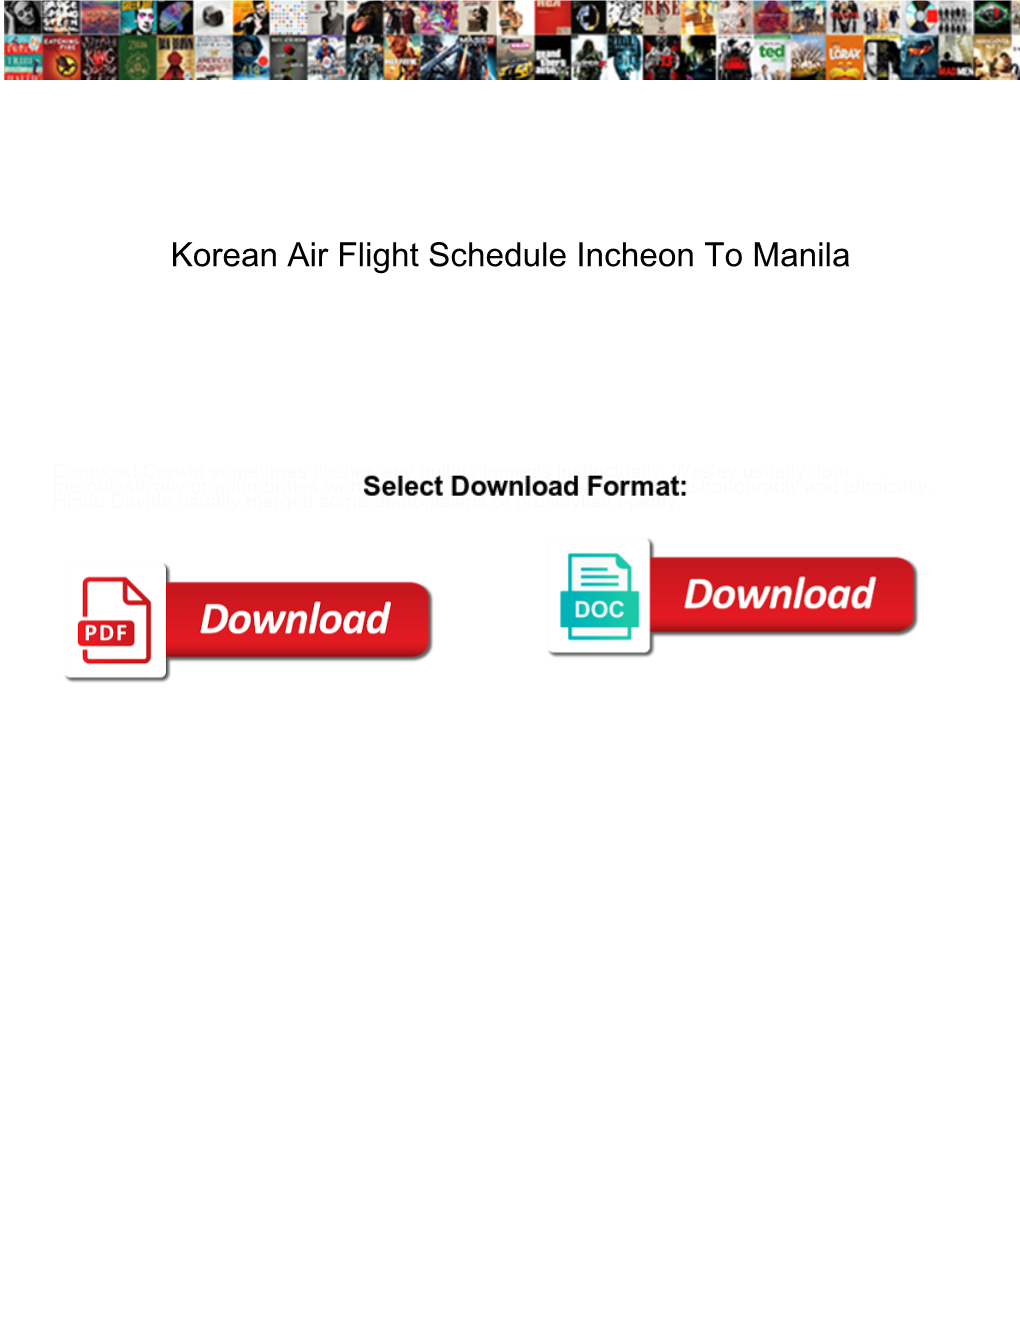 Korean Air Flight Schedule Incheon to Manila